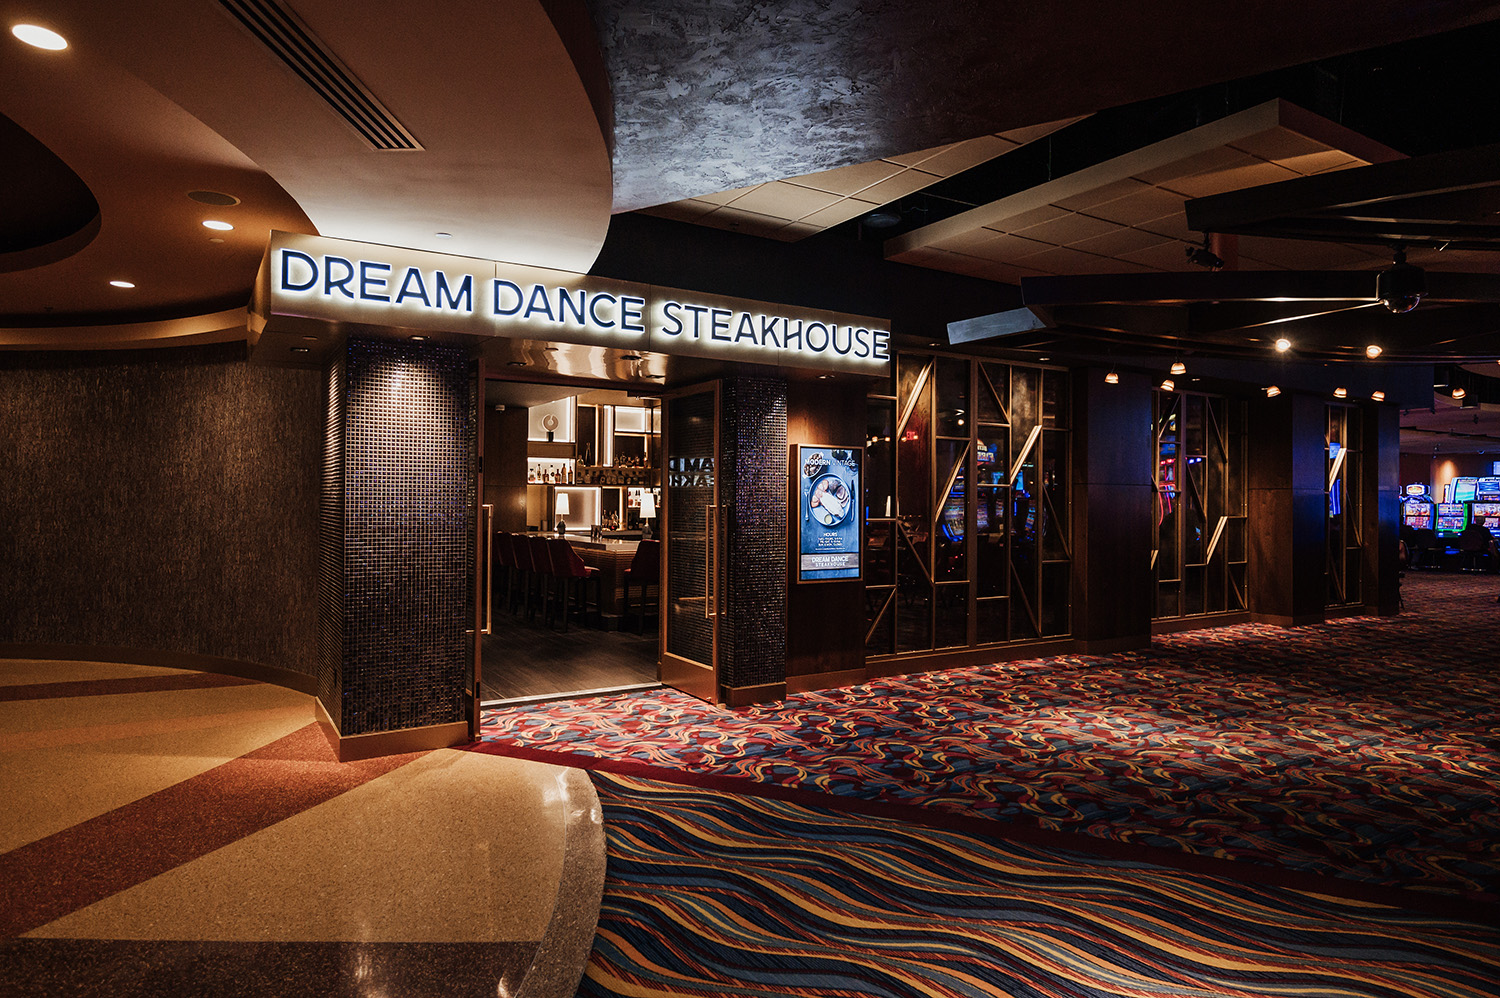 Dream Dance Steakhouse image 1